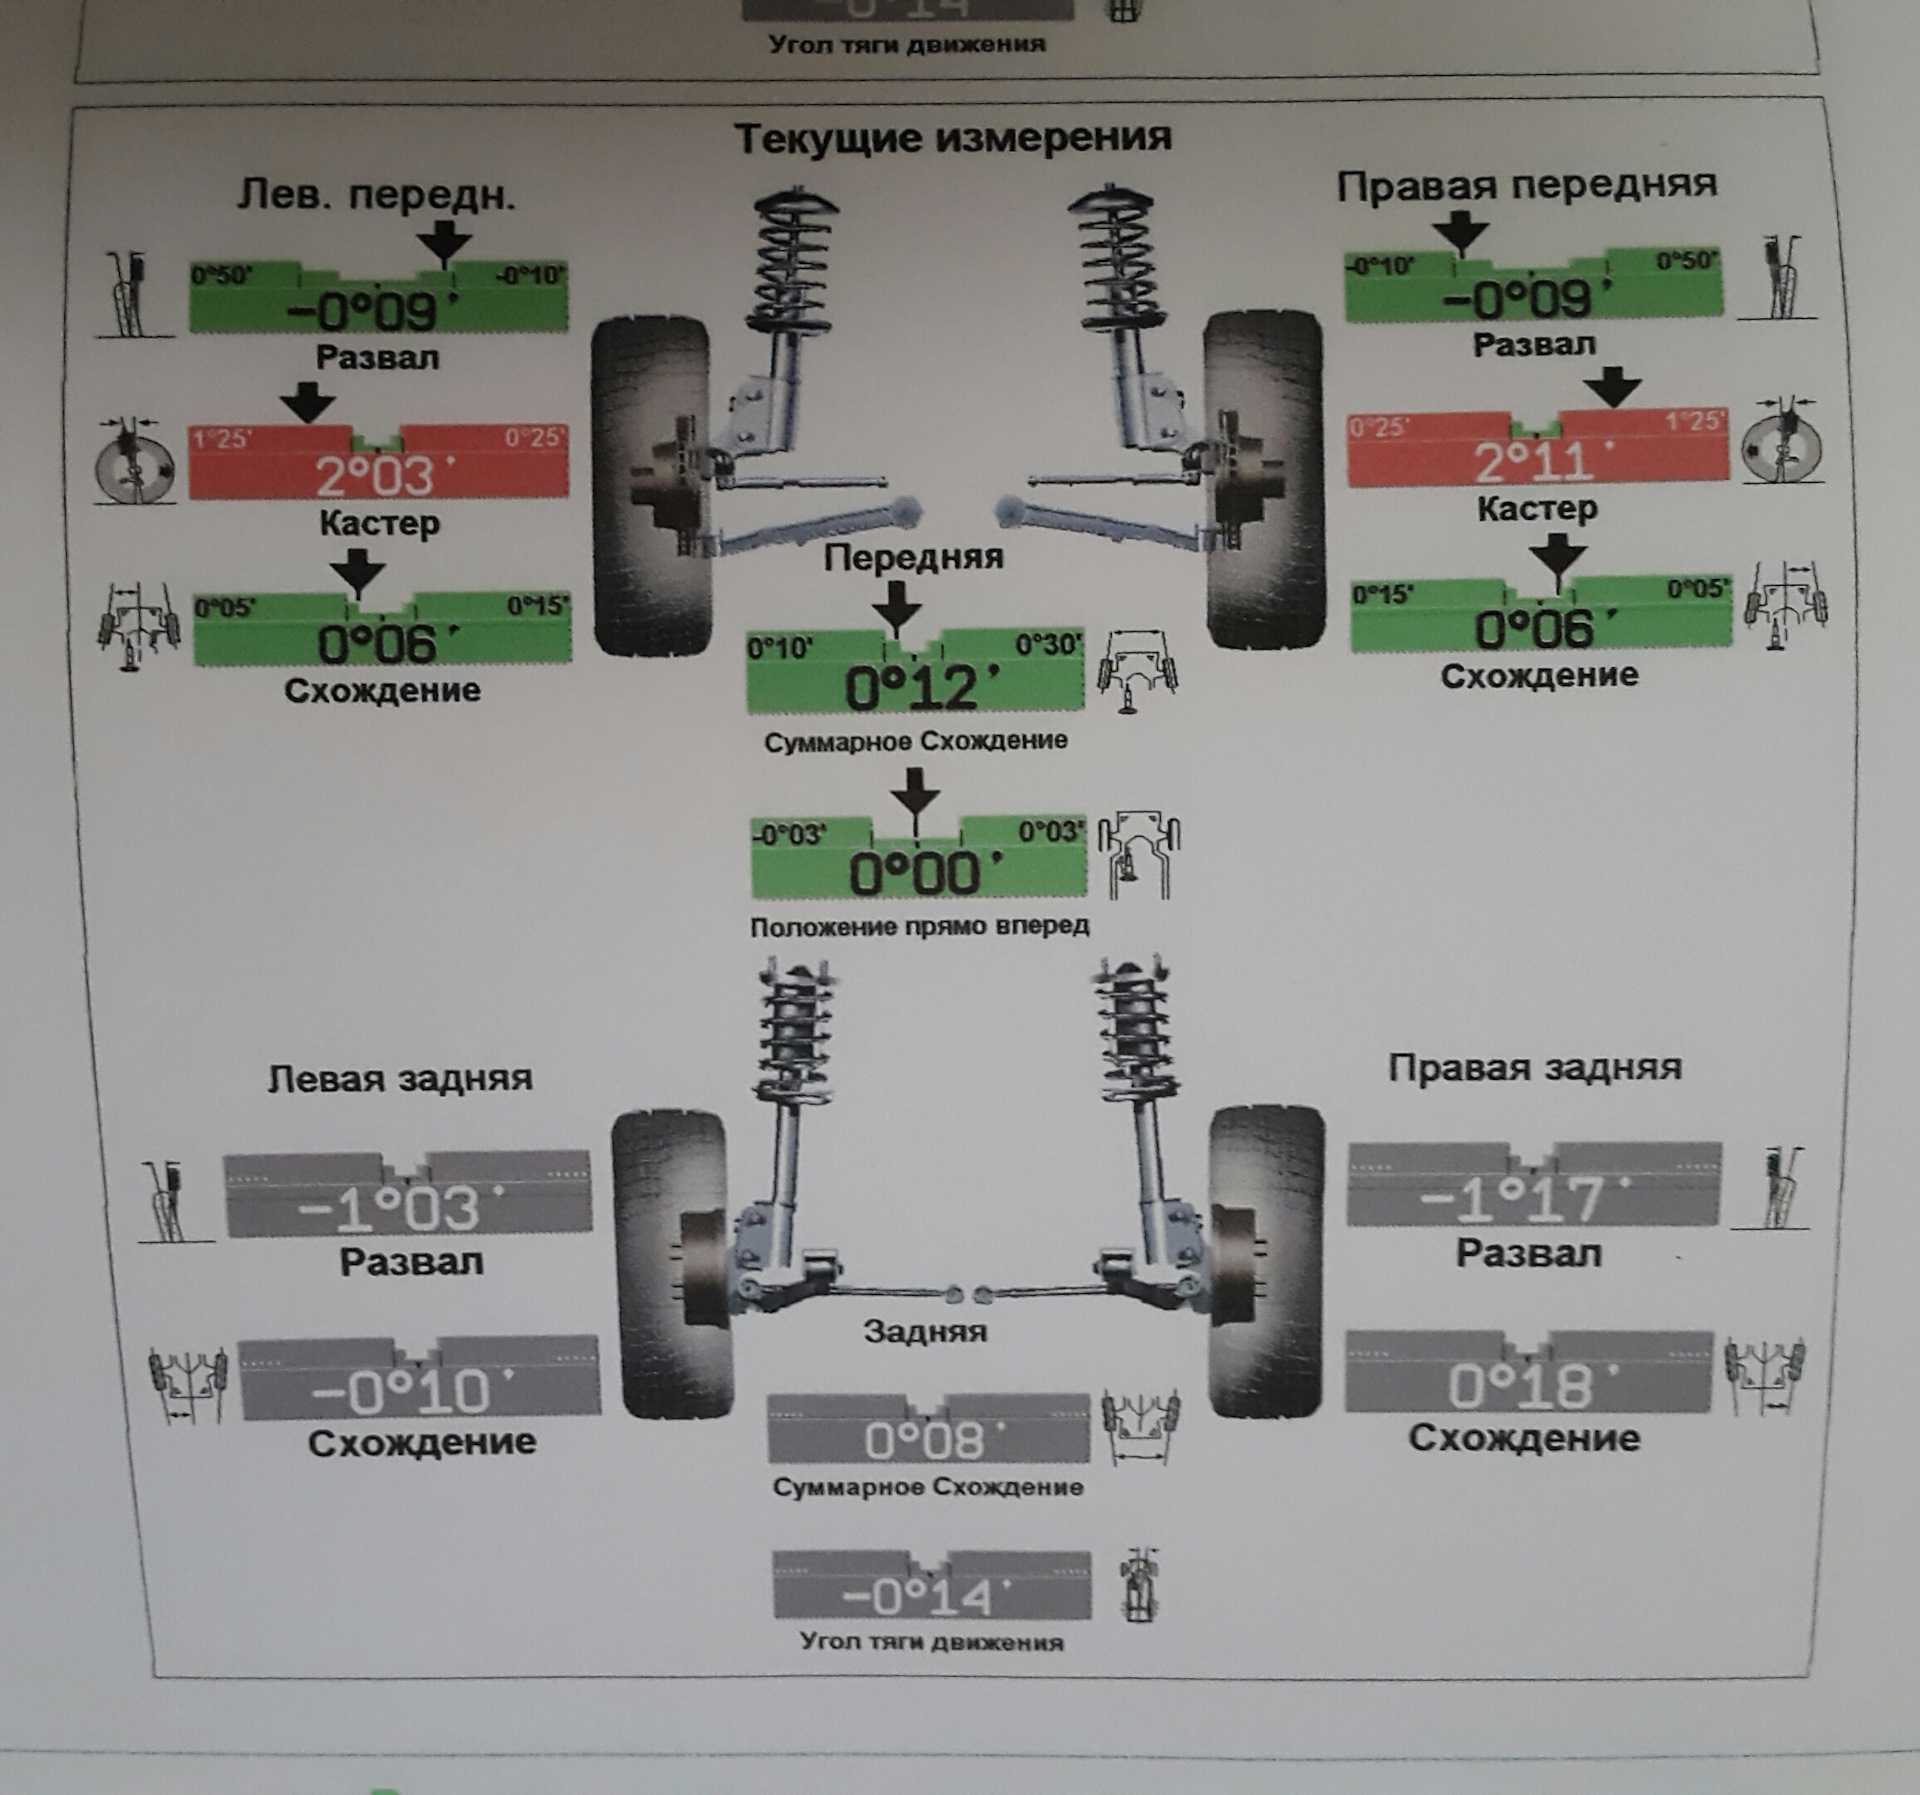 Описание конструкции передней подвески lada kalina 1117 2004 - 2013